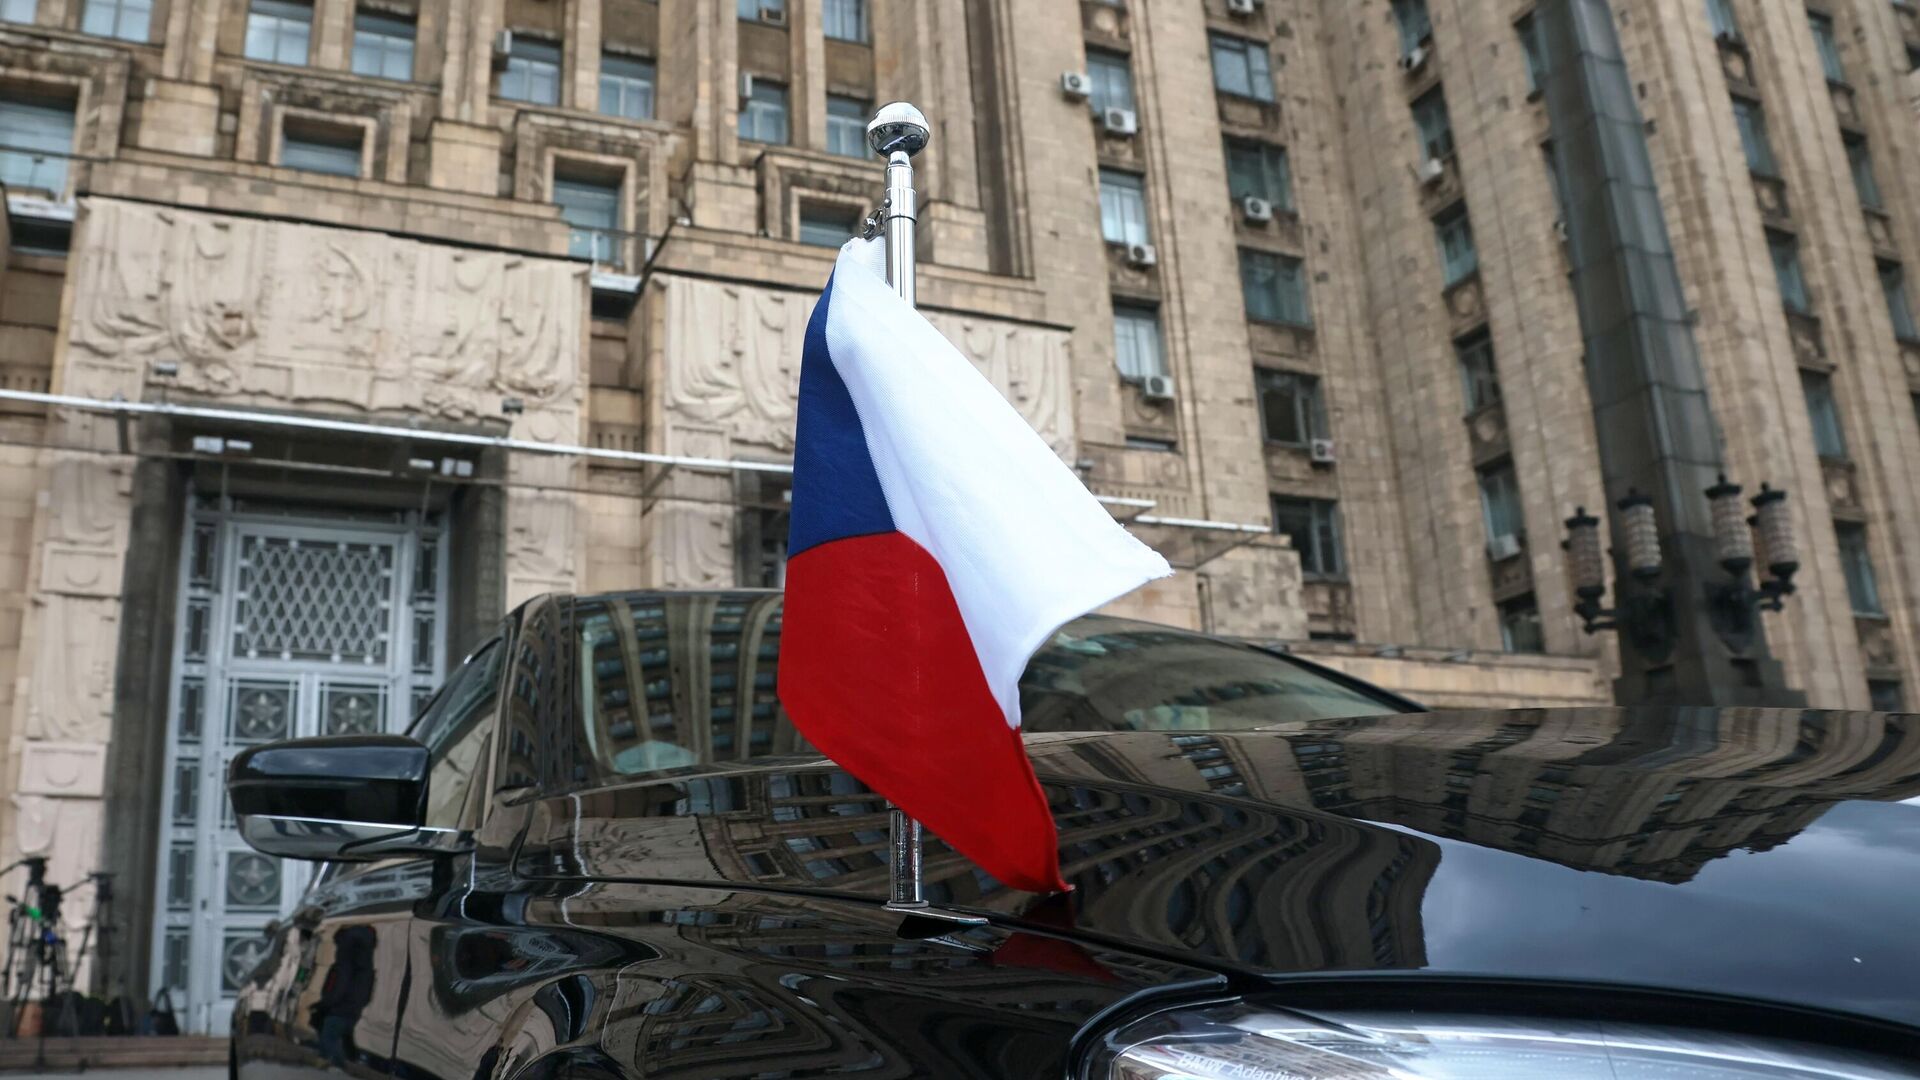 Автомобиль посольства Чехии в РФ возле здания МИД РФ в Москве - РИА Новости, 1920, 09.05.2021